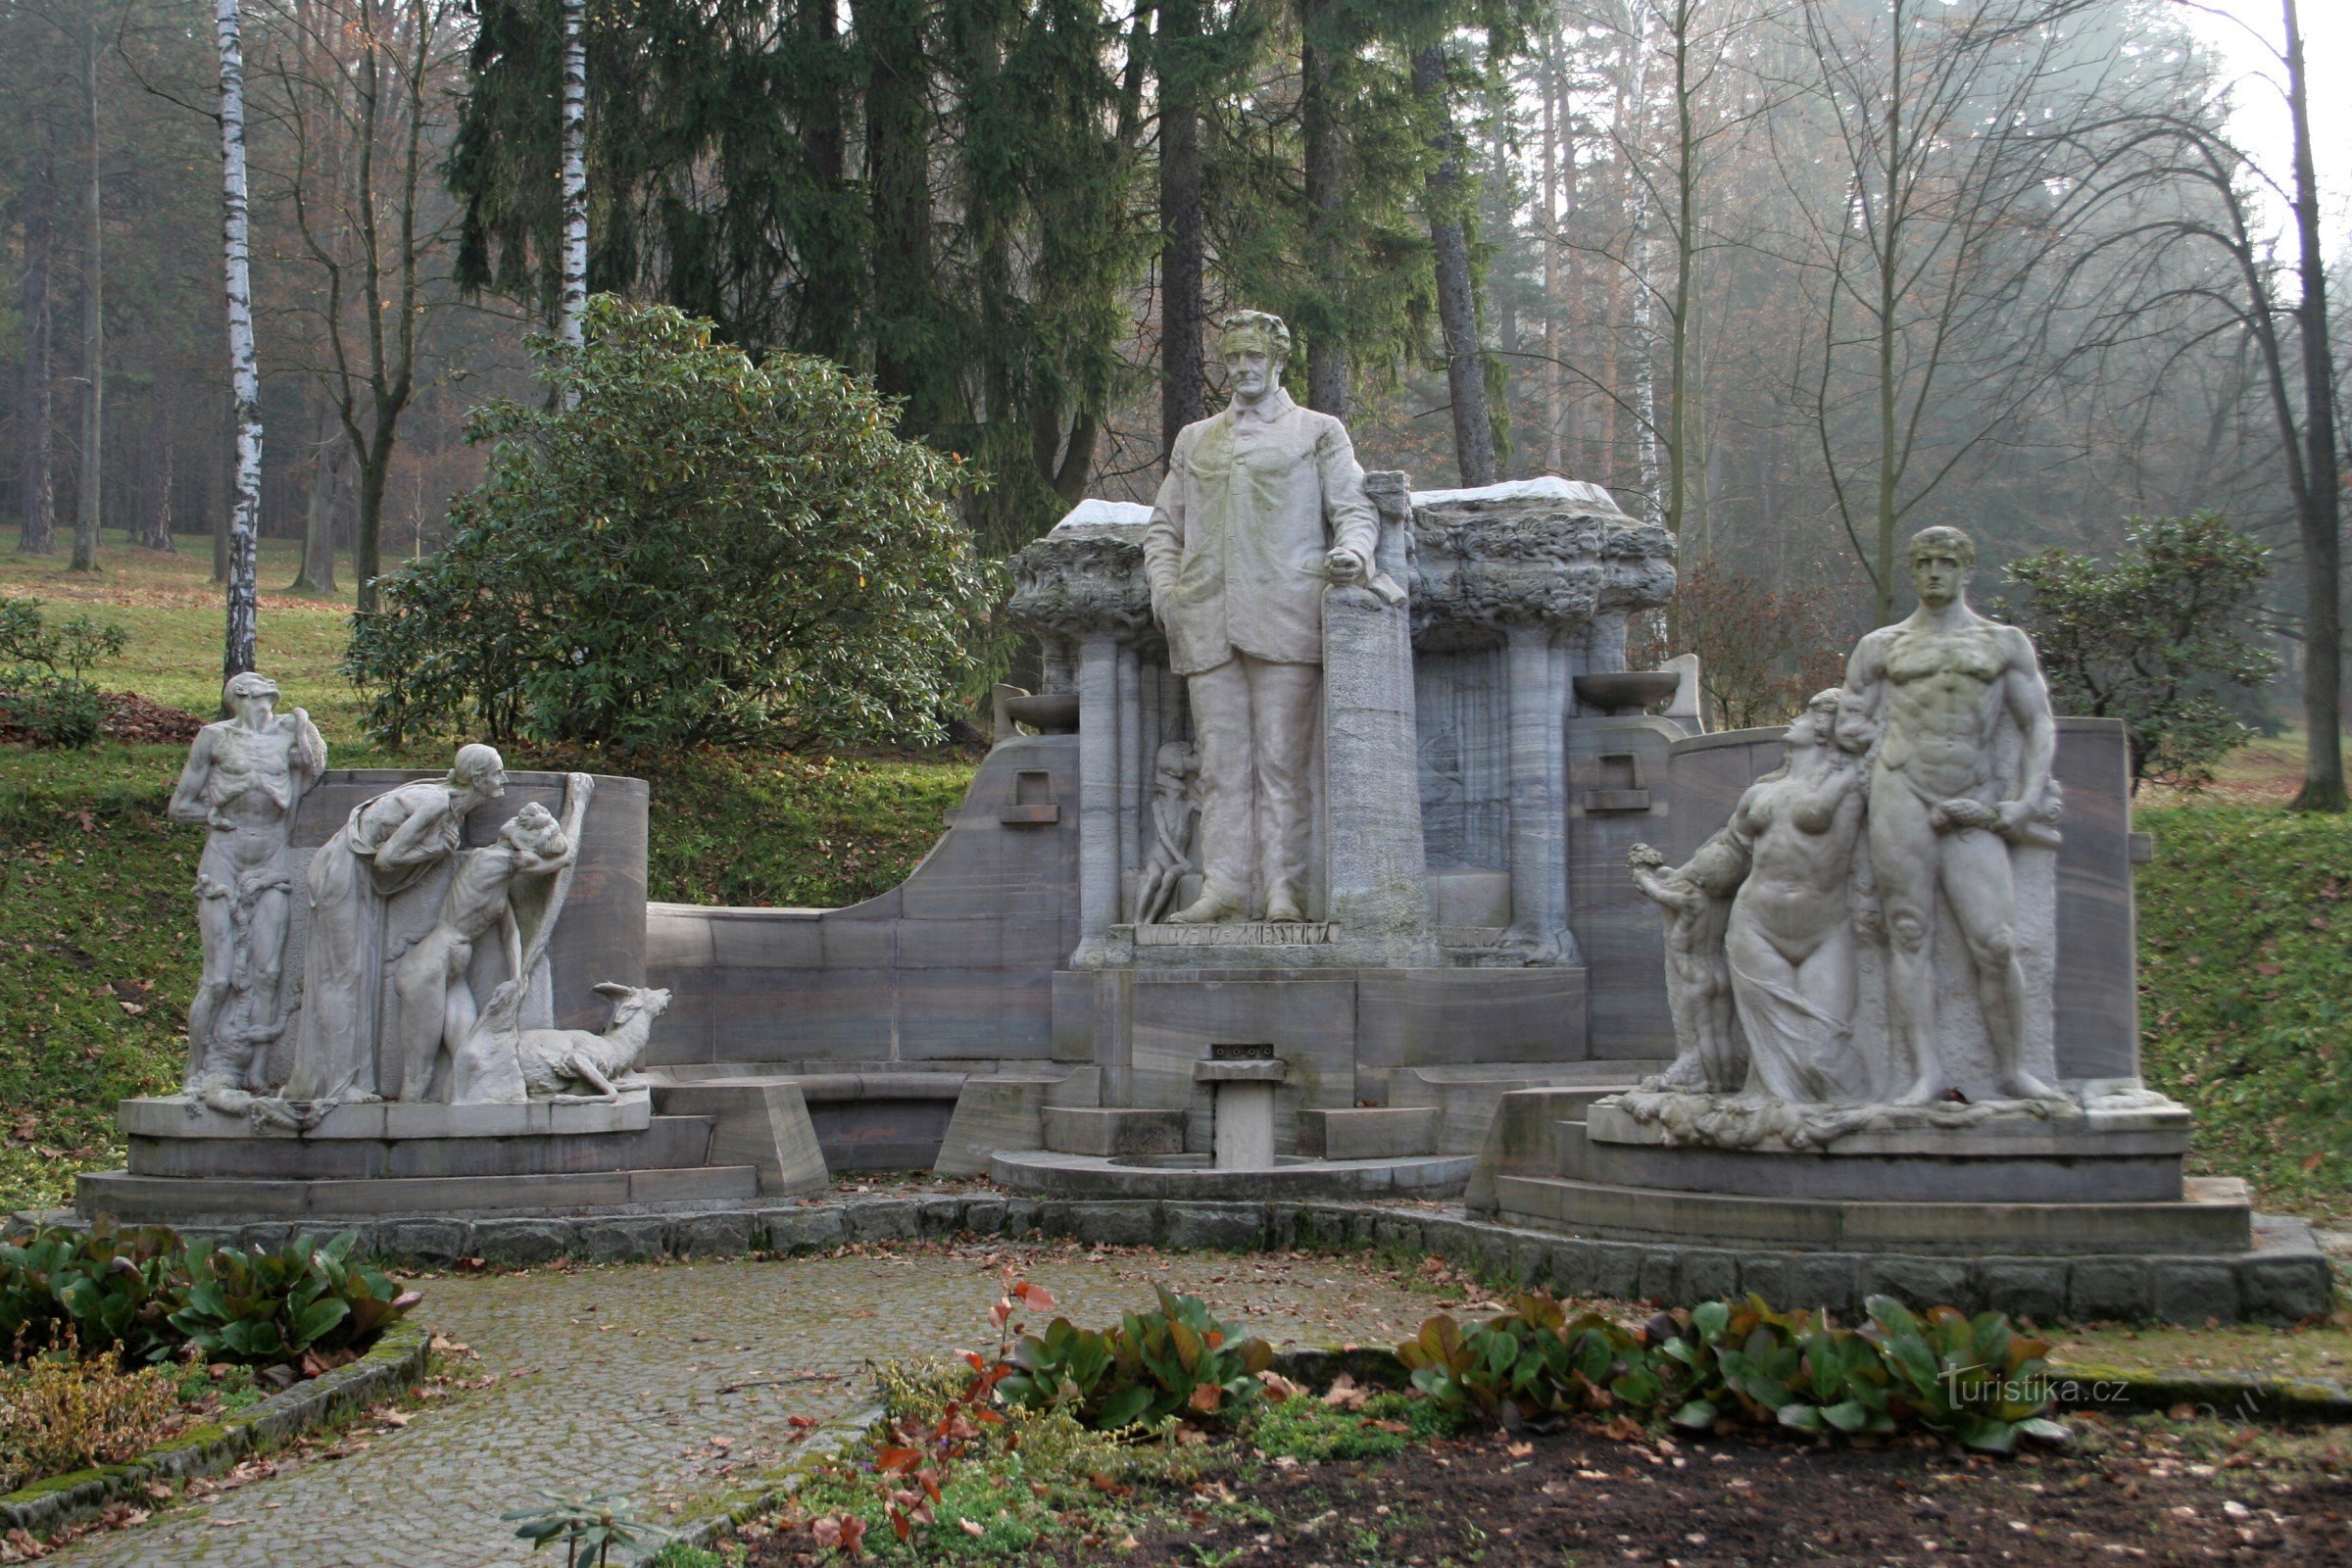 Priessnitz's monument in Smetana Sady